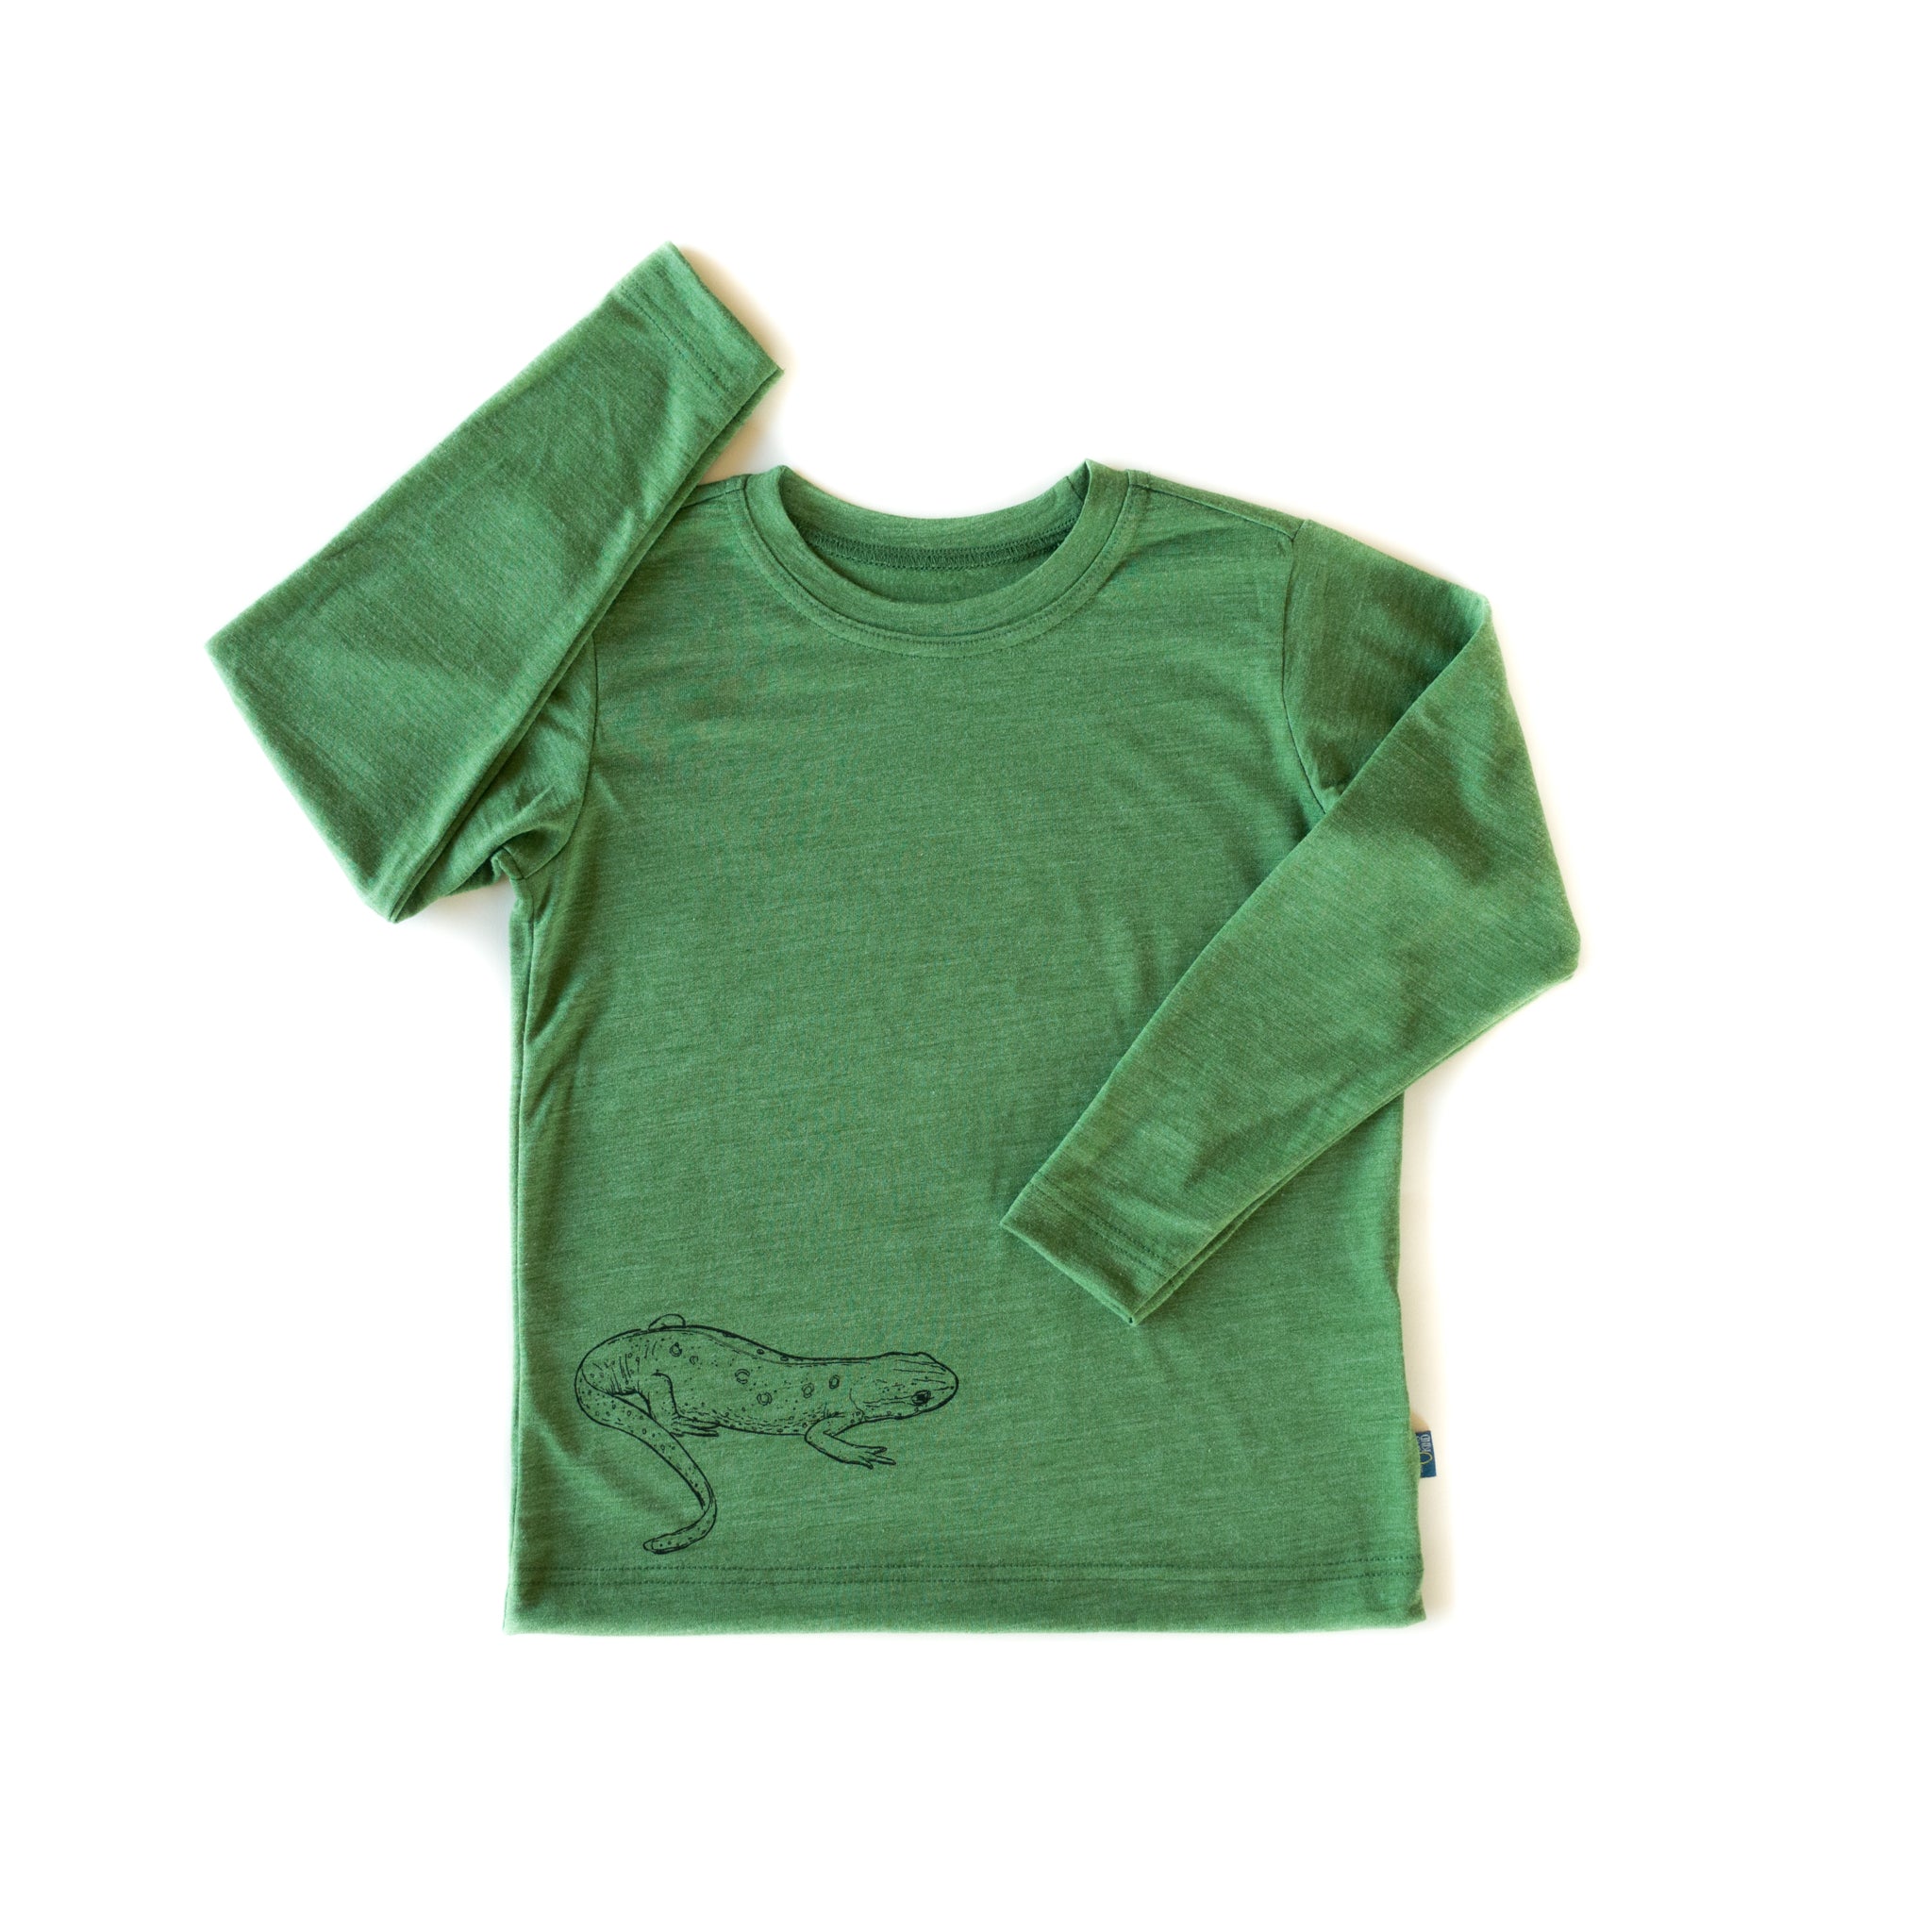 Glückskind Shirt | Merinowolle & Seide (bio/GOTS) - waldgrün Salamander 110-116 mulesing frei, kbA, kbT, nachhaltig, individuelles Mode Label aus Salzburg